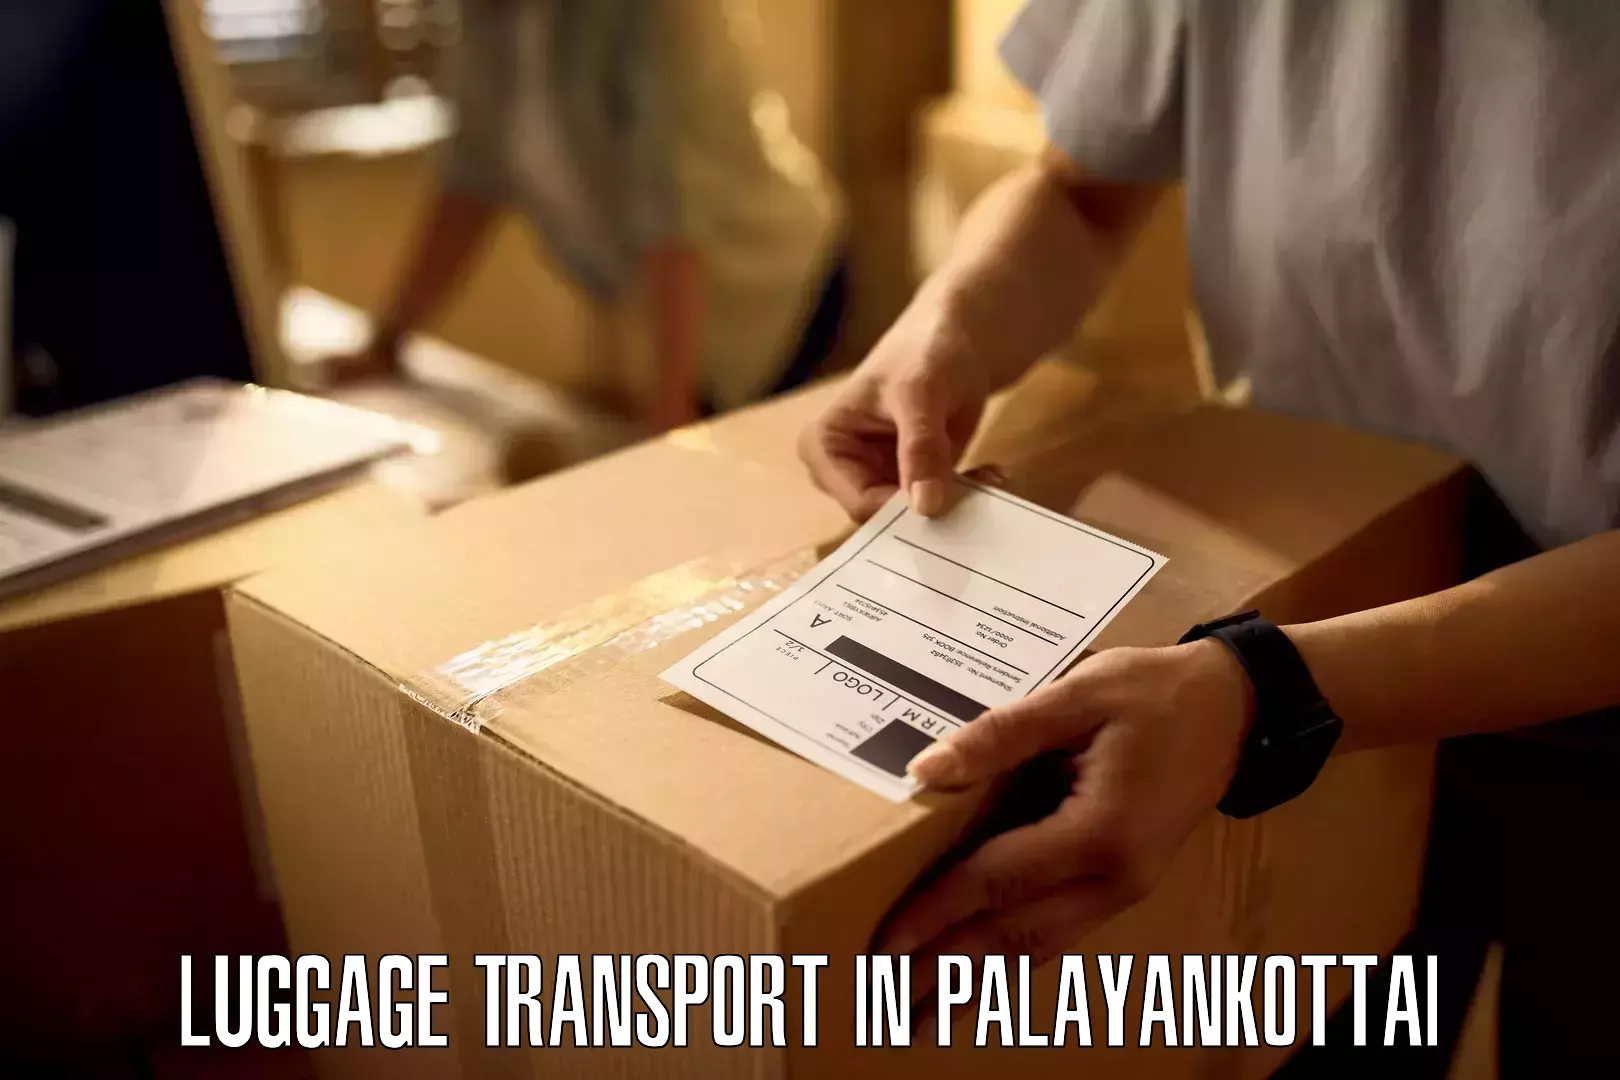 Holiday baggage shipping in Palayankottai